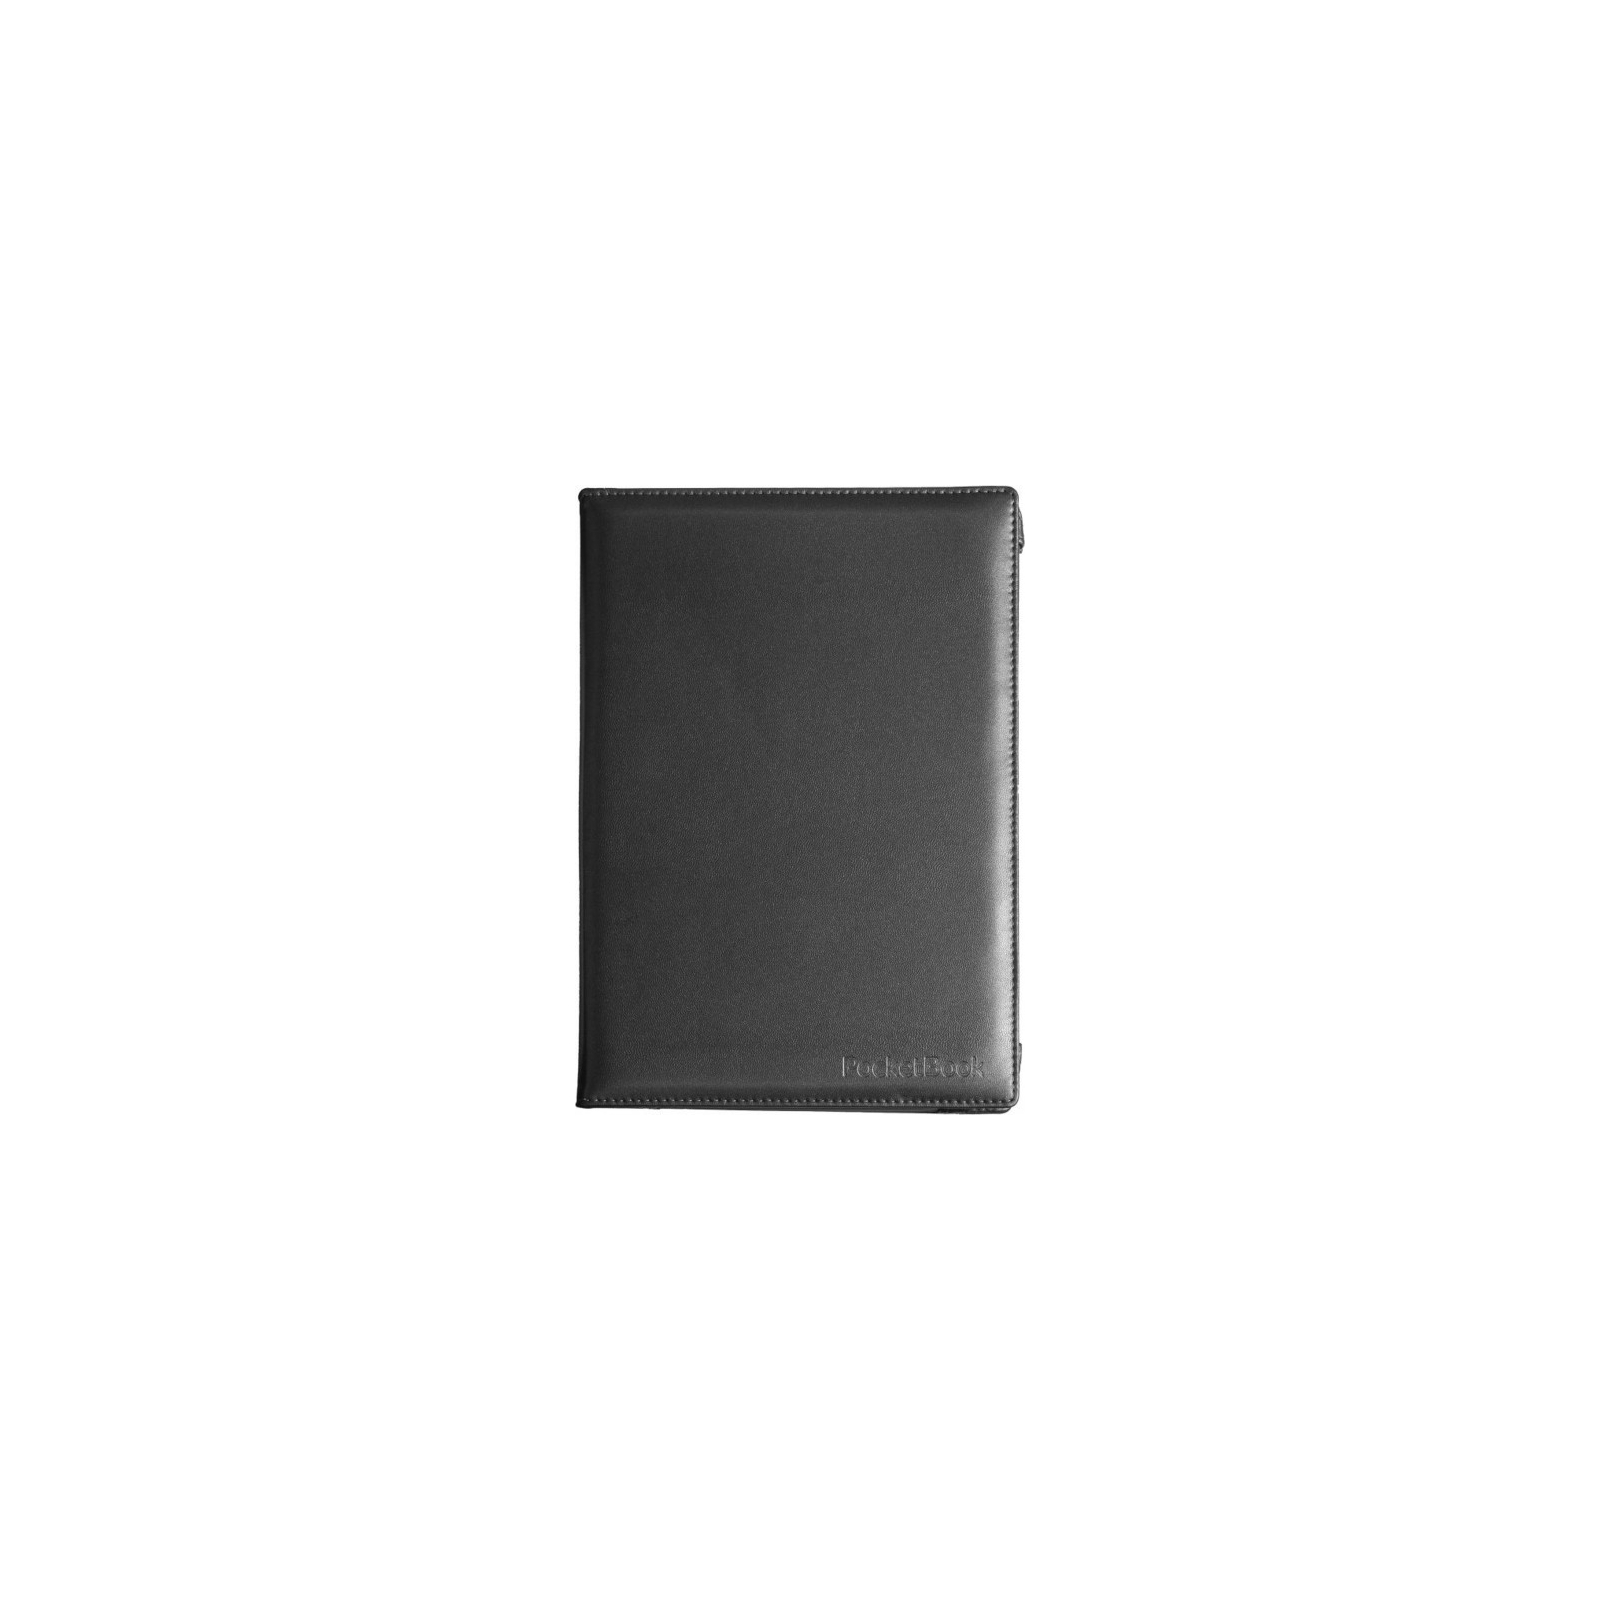 Чехол для электронной книги Pocketbook 10.3" для PB1040 black (VLPB-TB1040BL1)